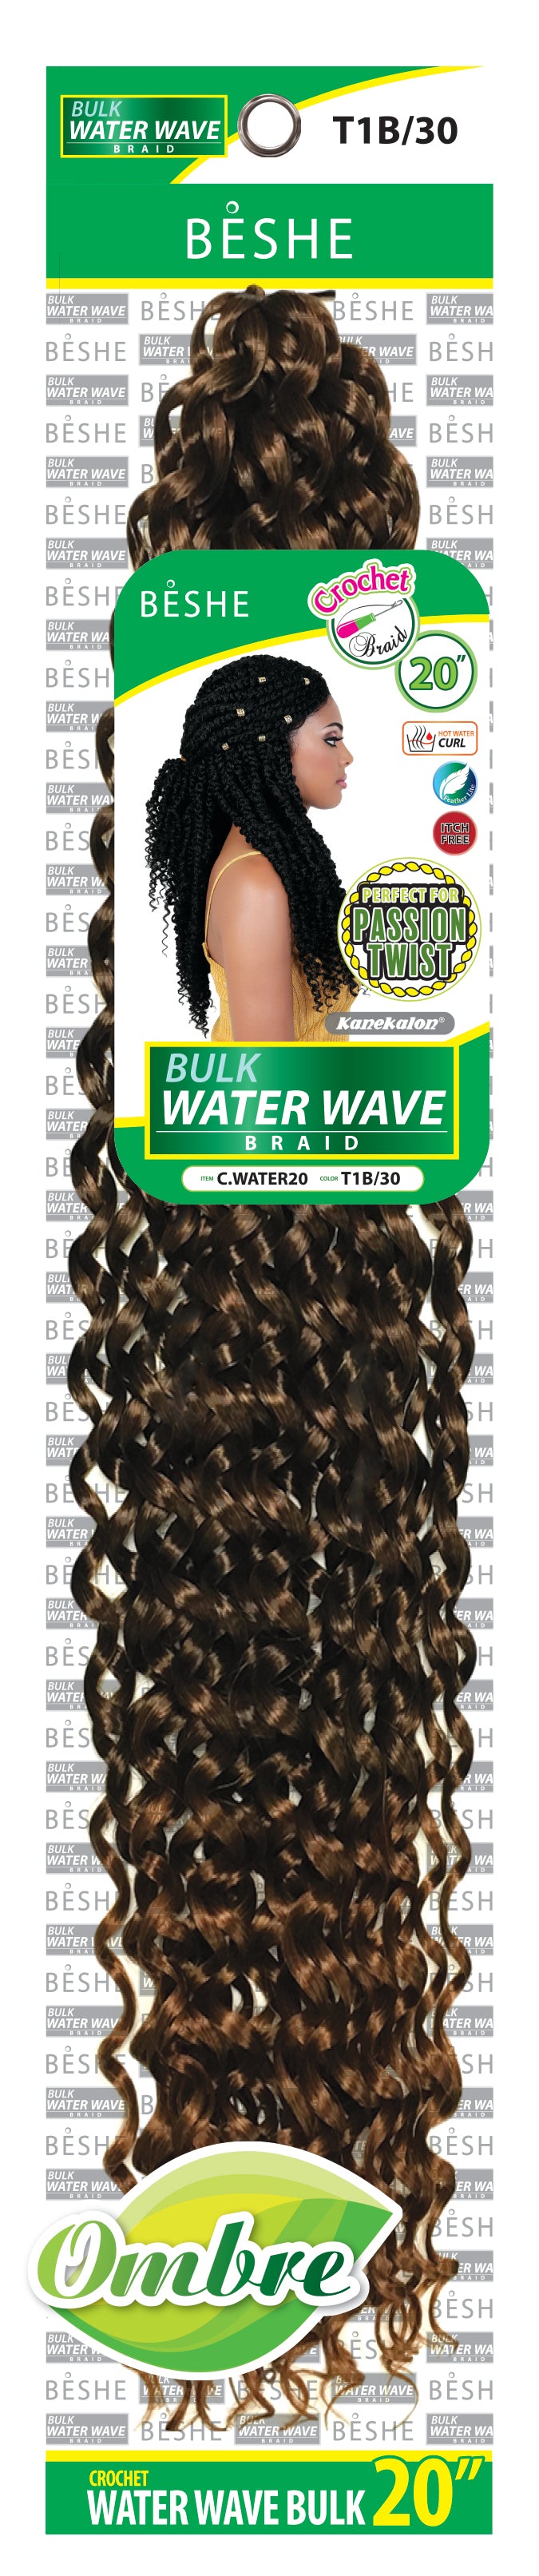 Beshe Crochet Braid Pre-Looped Bulk 20" Water Wave Braid C.WATER20 - Elevate Styles